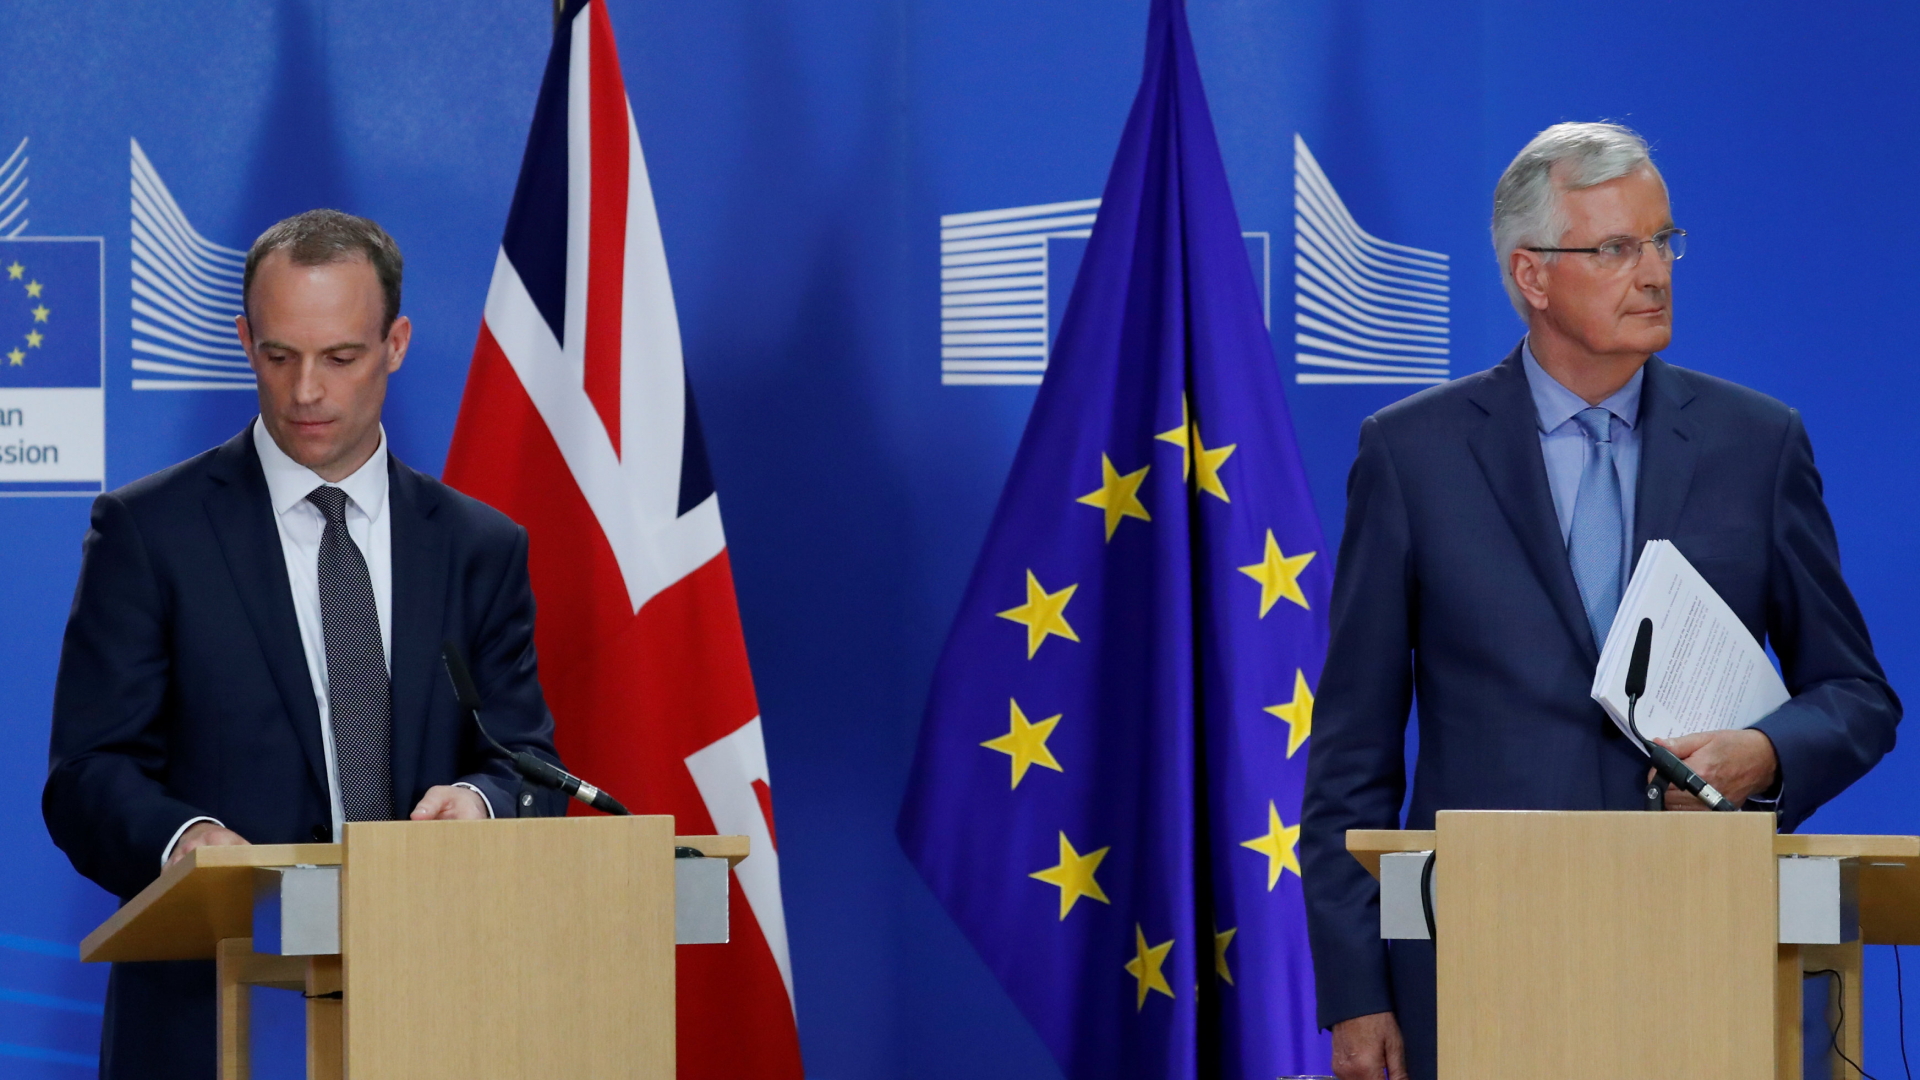 Der britische Brexit-Minister Dominic Raab and der Verhandlungsführer der EU, Michel Barnier, bei einer Pressekonferenz in Brüssel | REUTERS